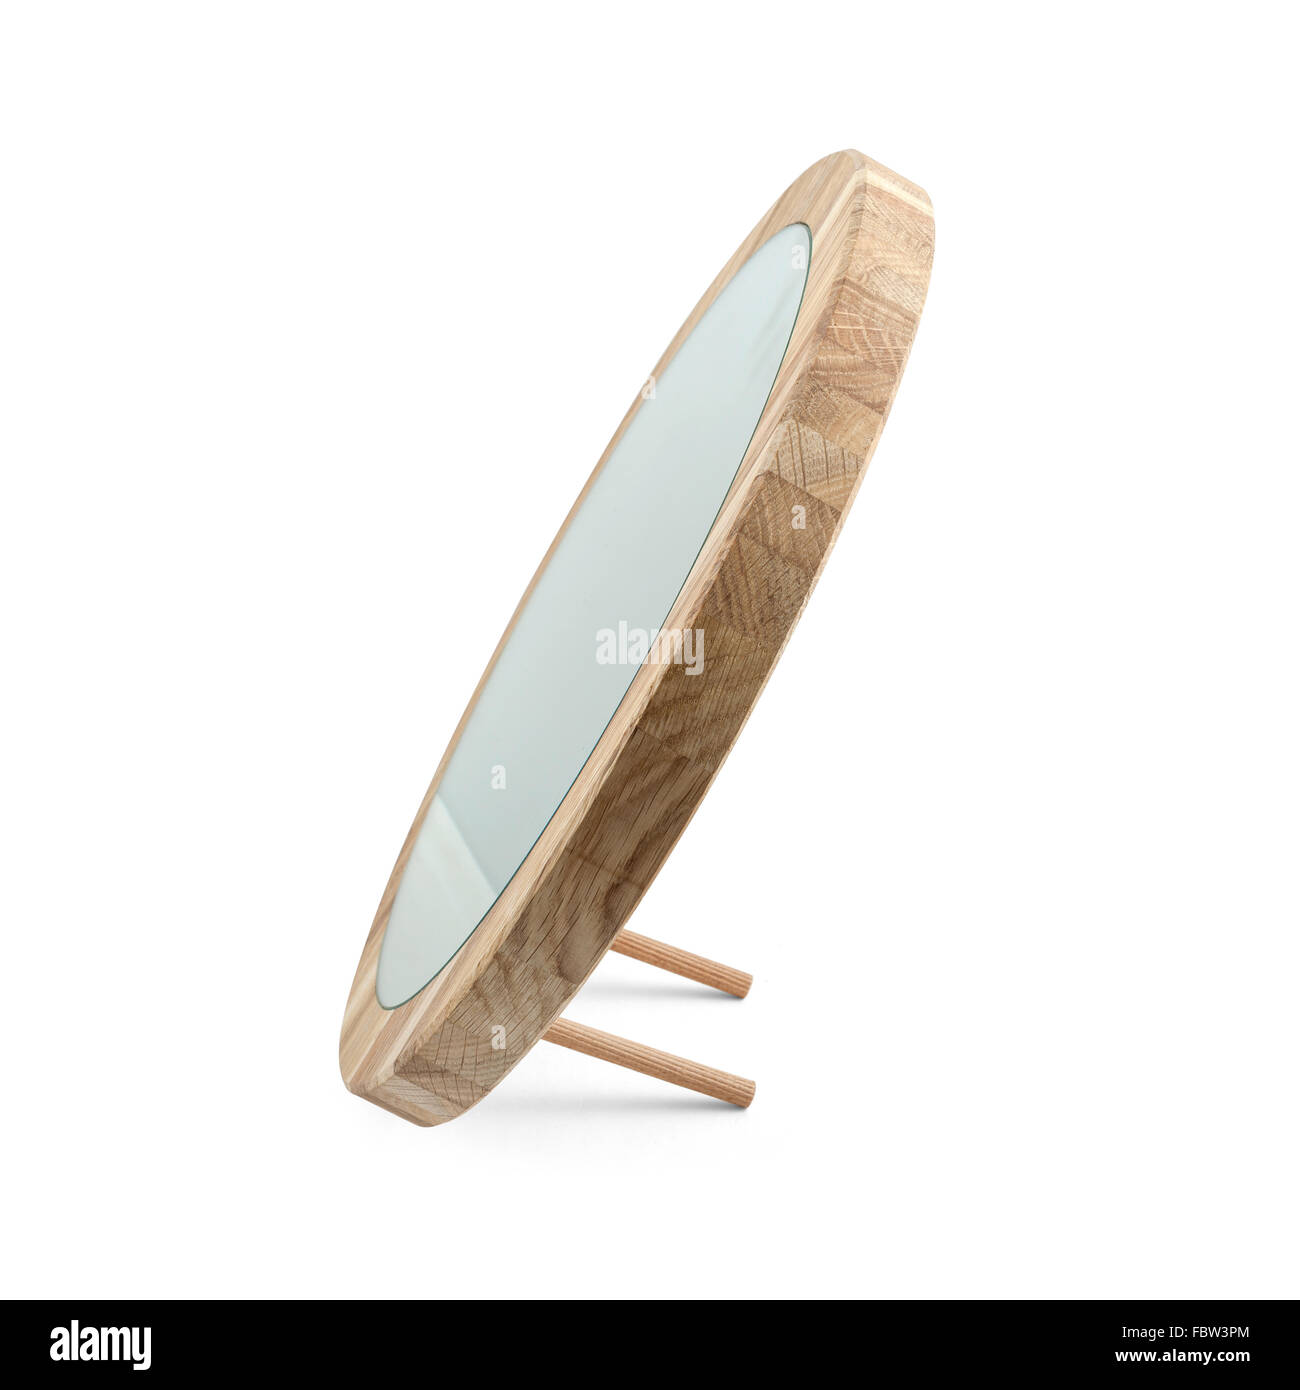 Miroir rond dans le cadre en bois - isolated on white Banque D'Images